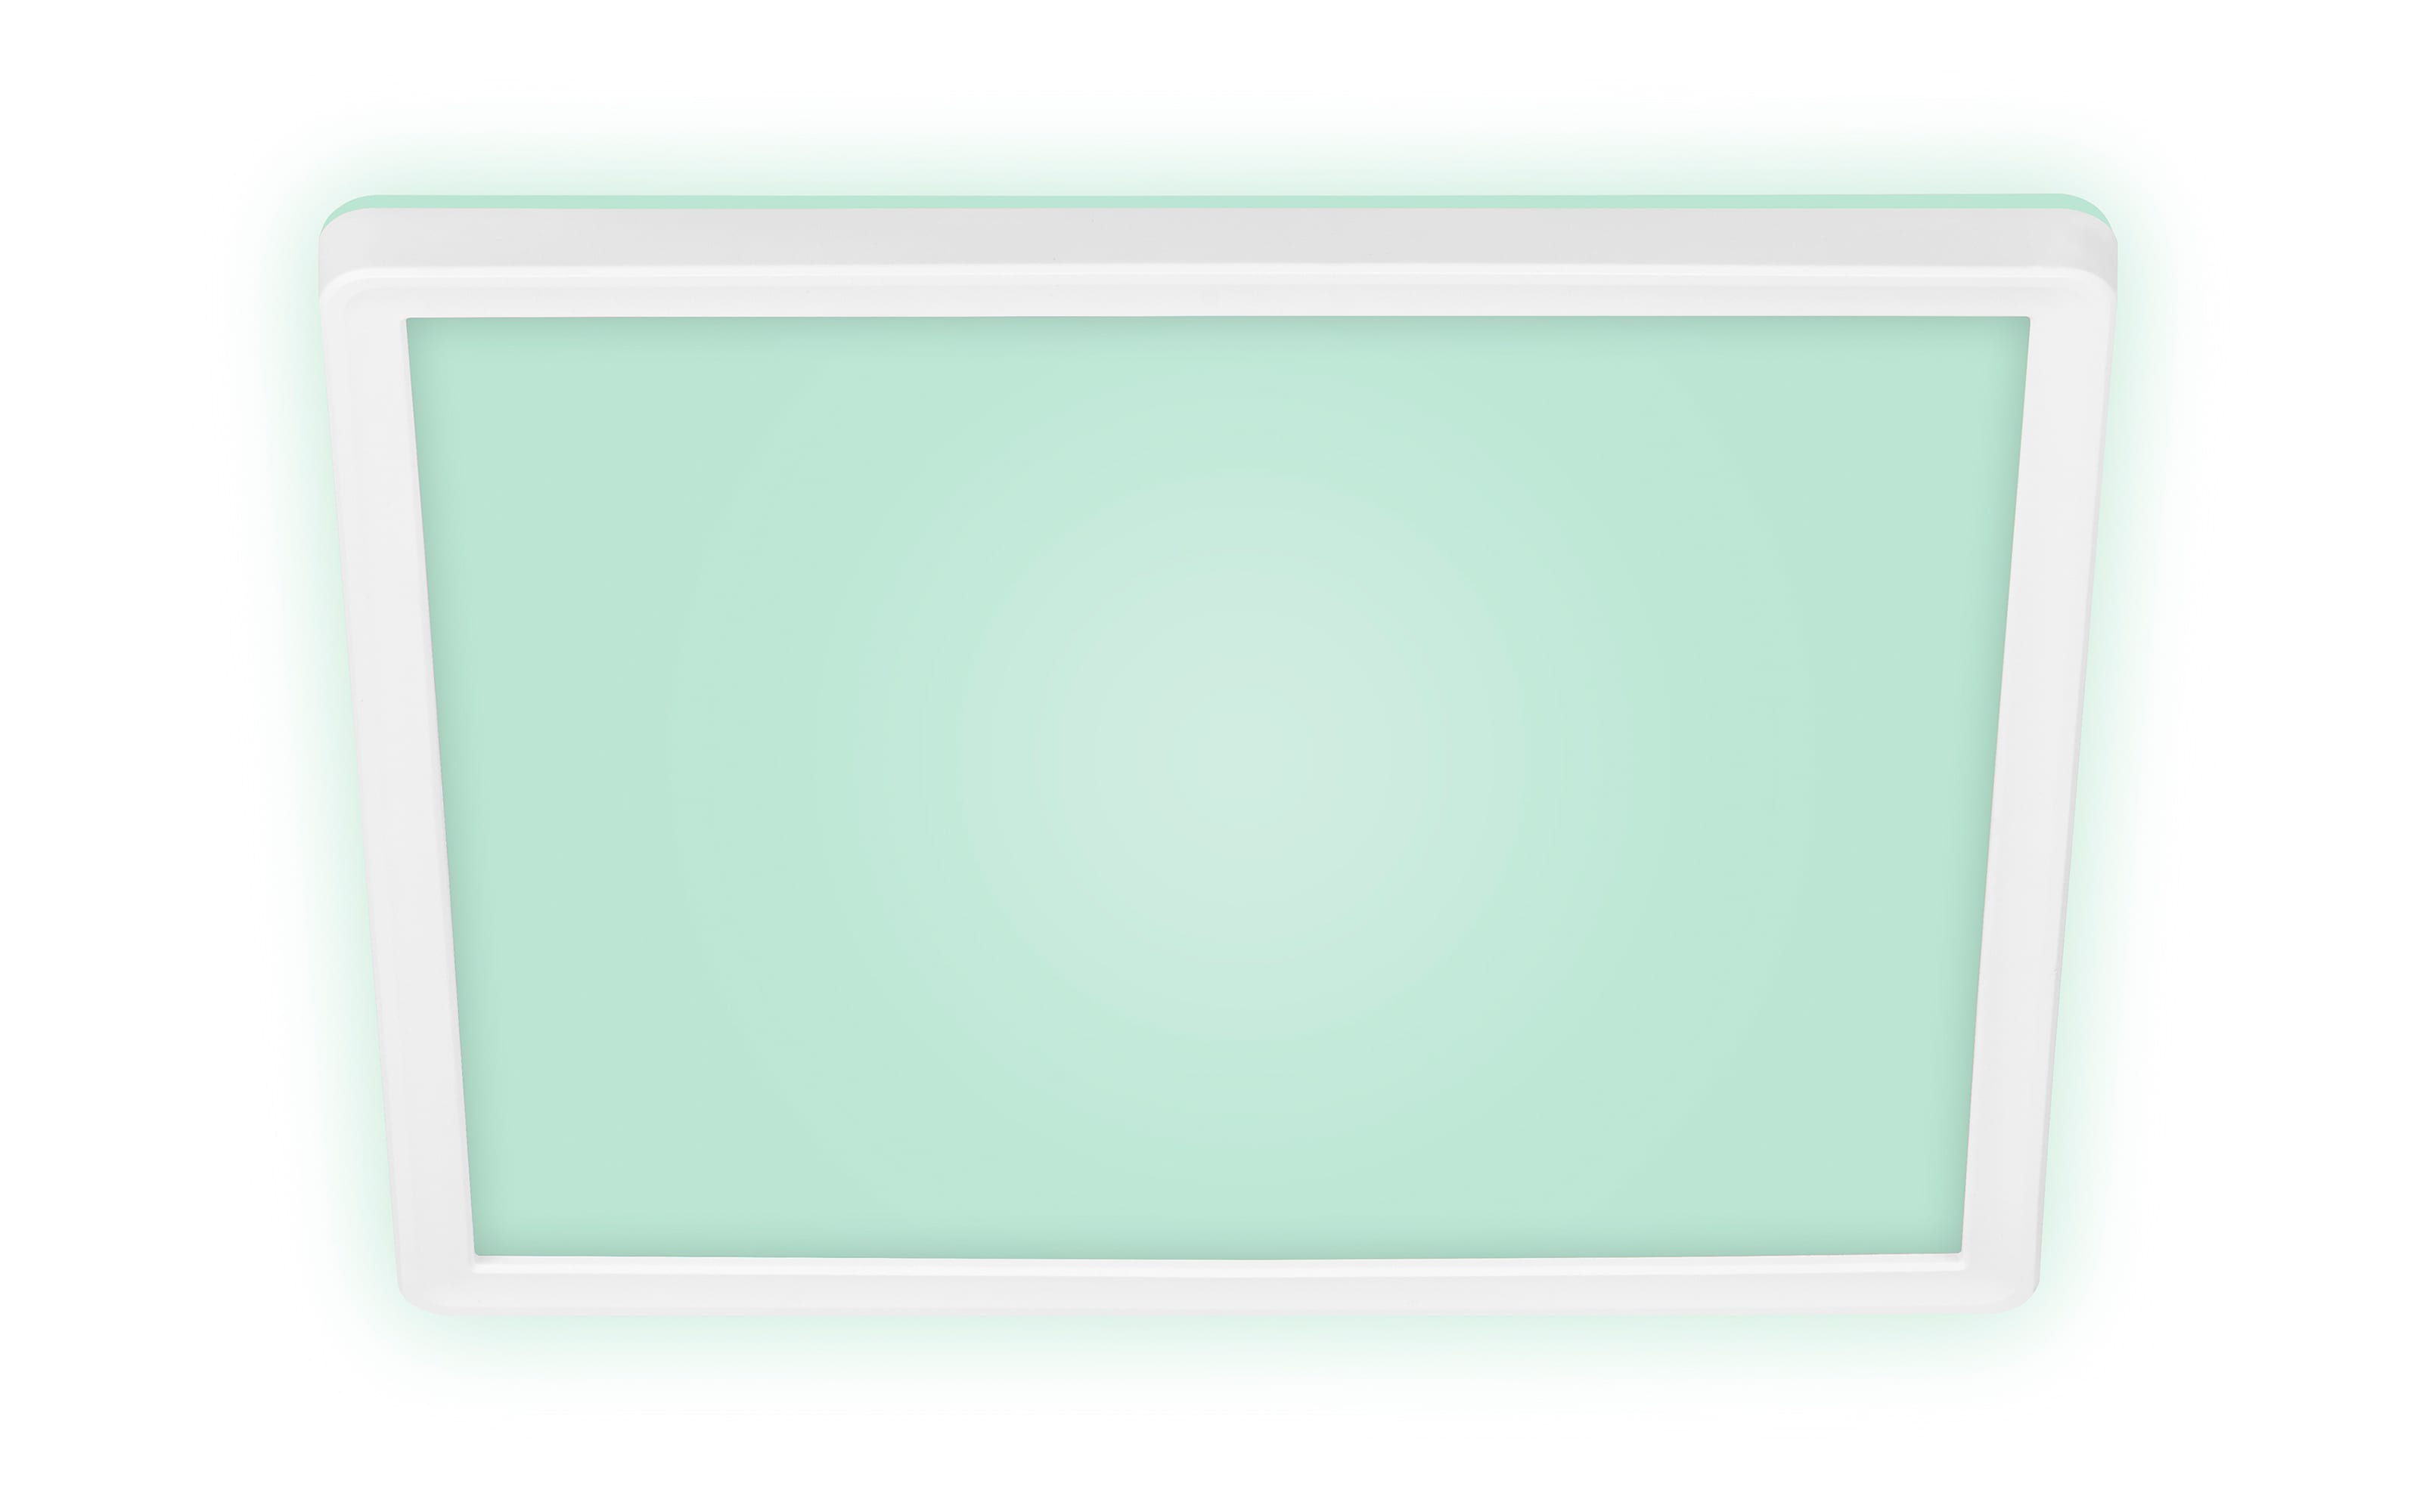 LED-Deckenleuchte Slim RGB in weiß, 29,3 x 29,3 cm